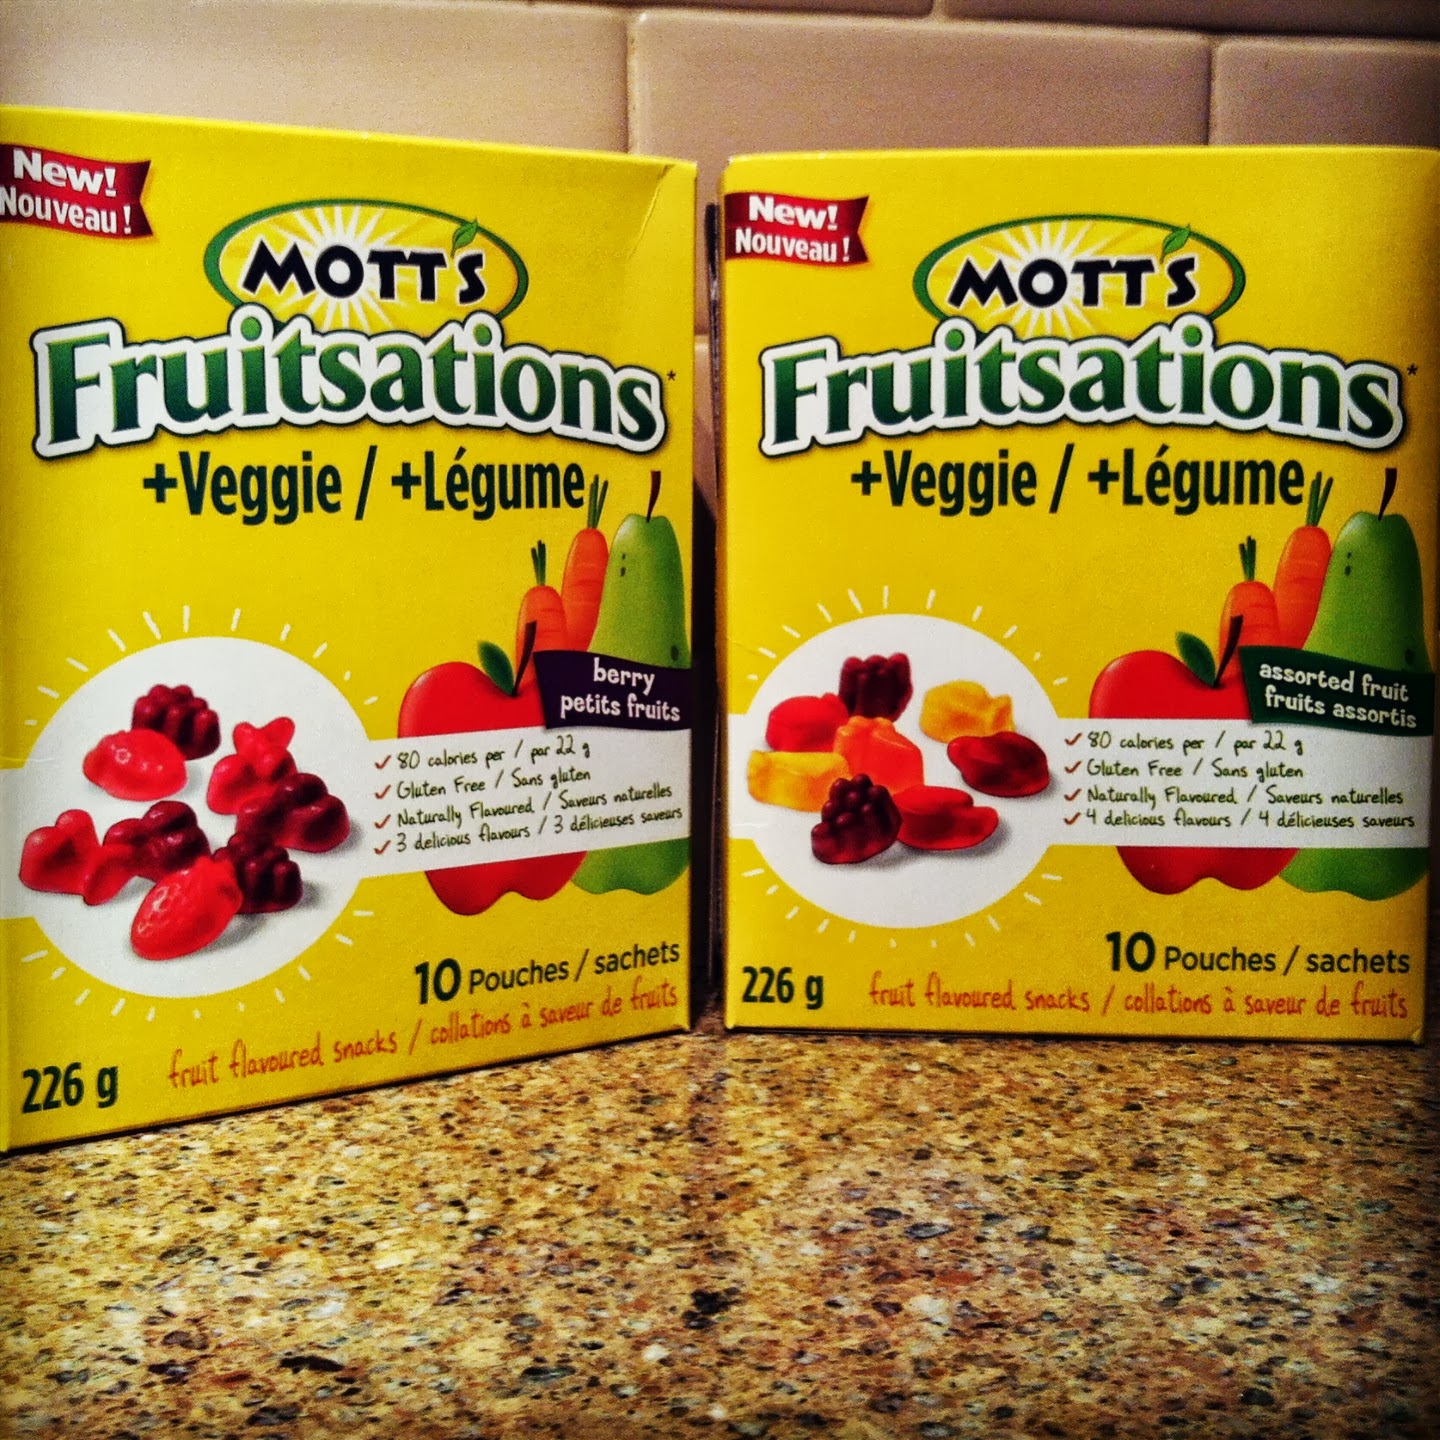 My Honest Review of Mott's Fruitsations + Veggie Fruit Snacks + Lunch